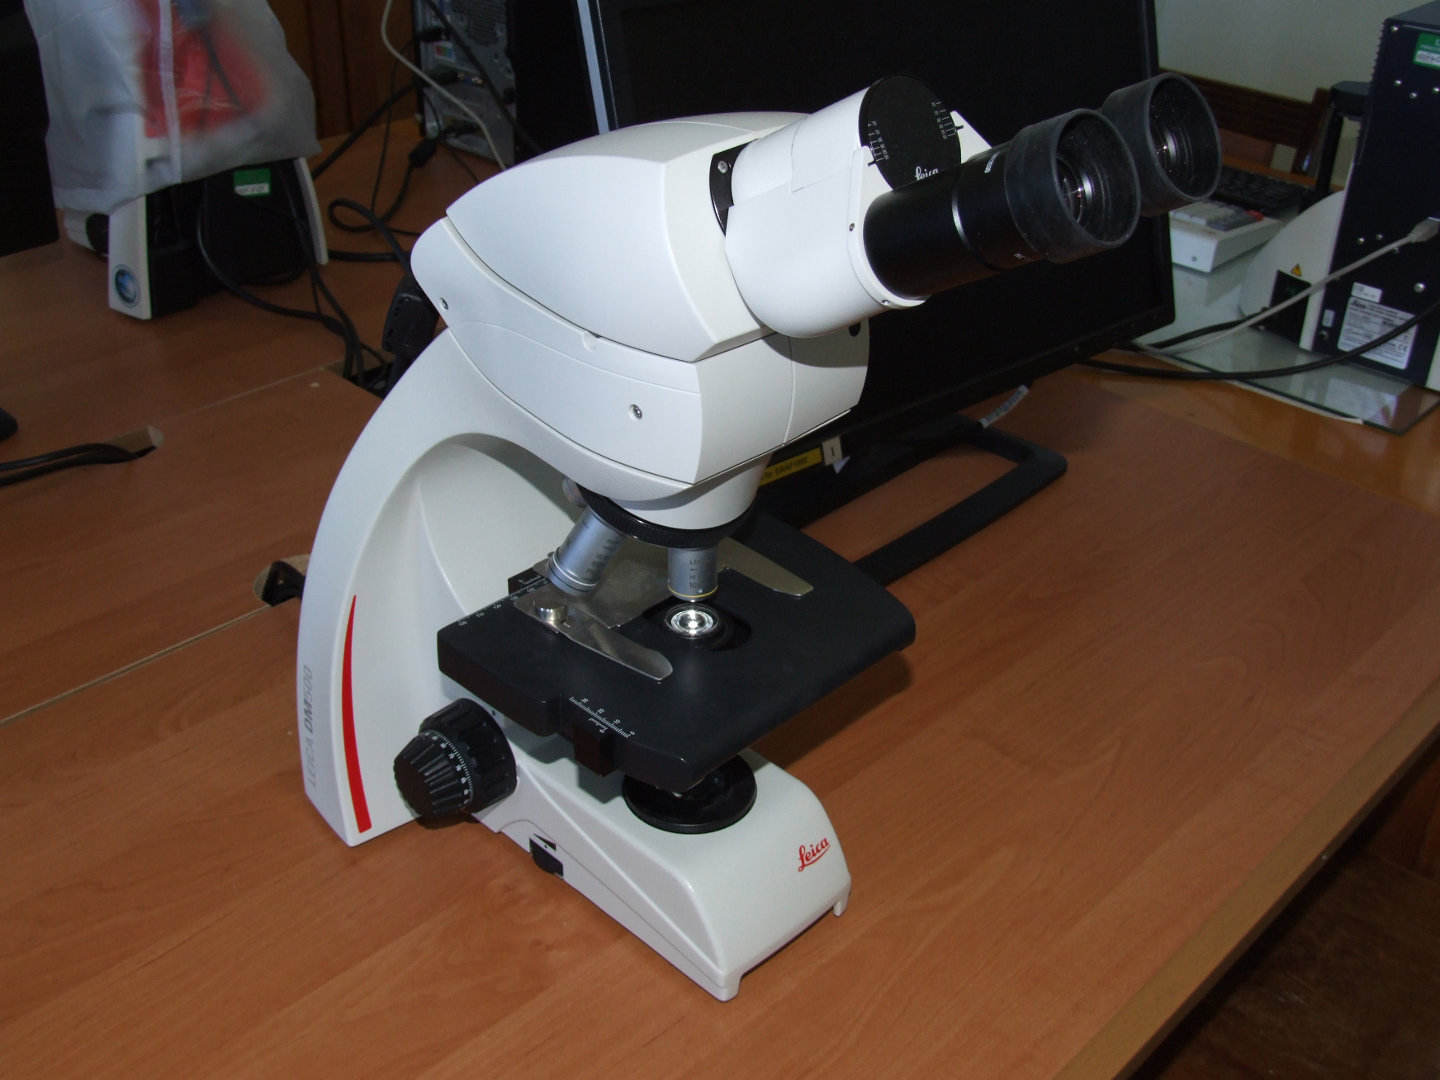 The Leica DM500 microscopes, Leica ICC50 HD Camera Modul